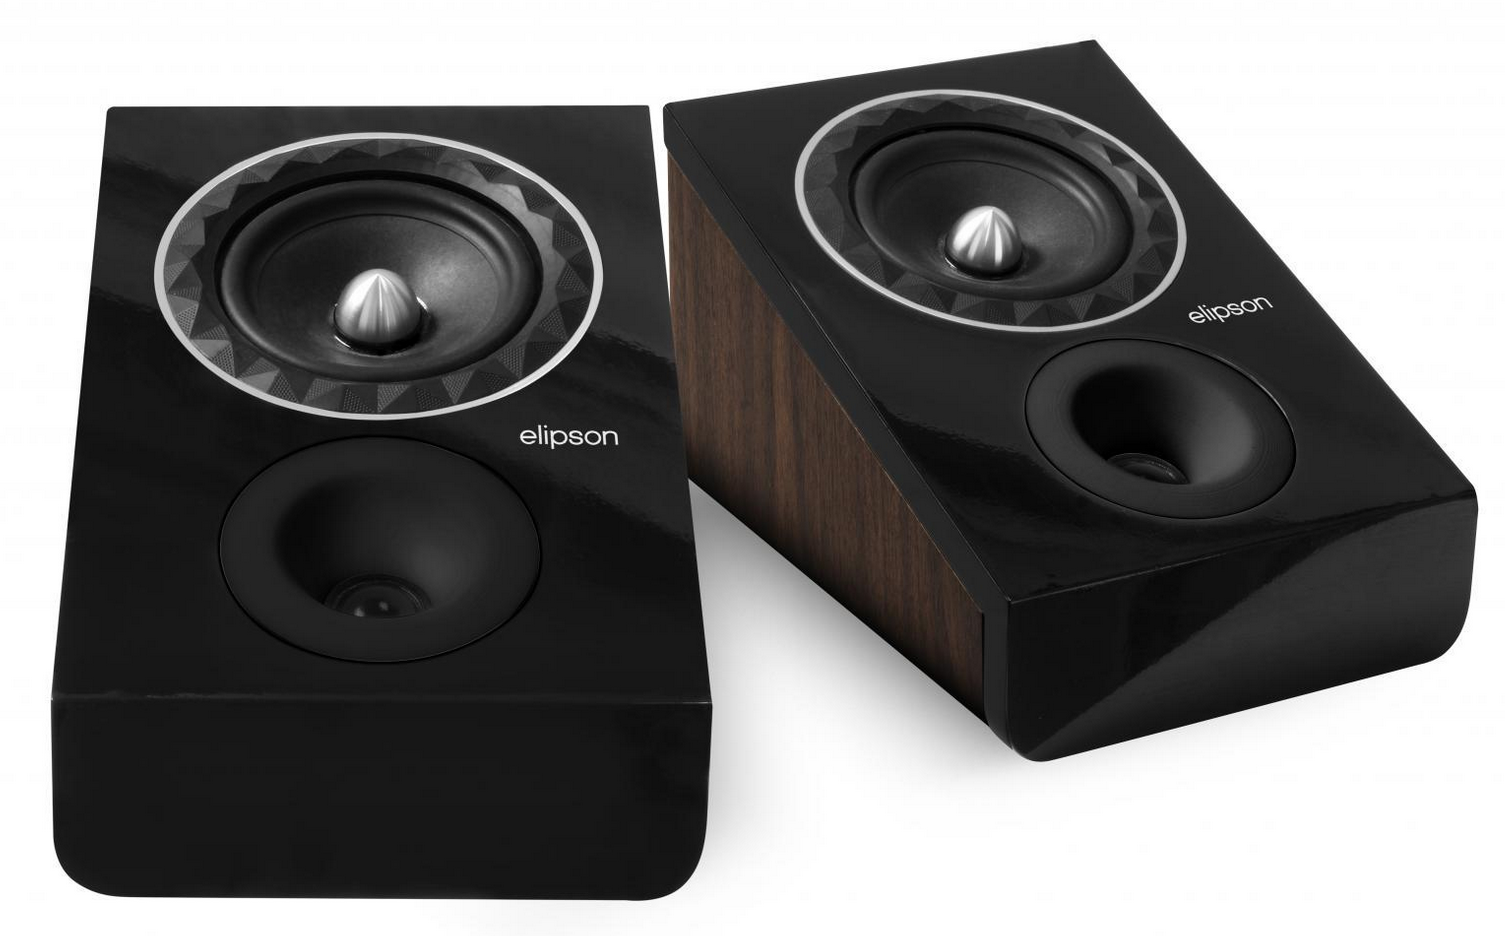 Elipson speakers